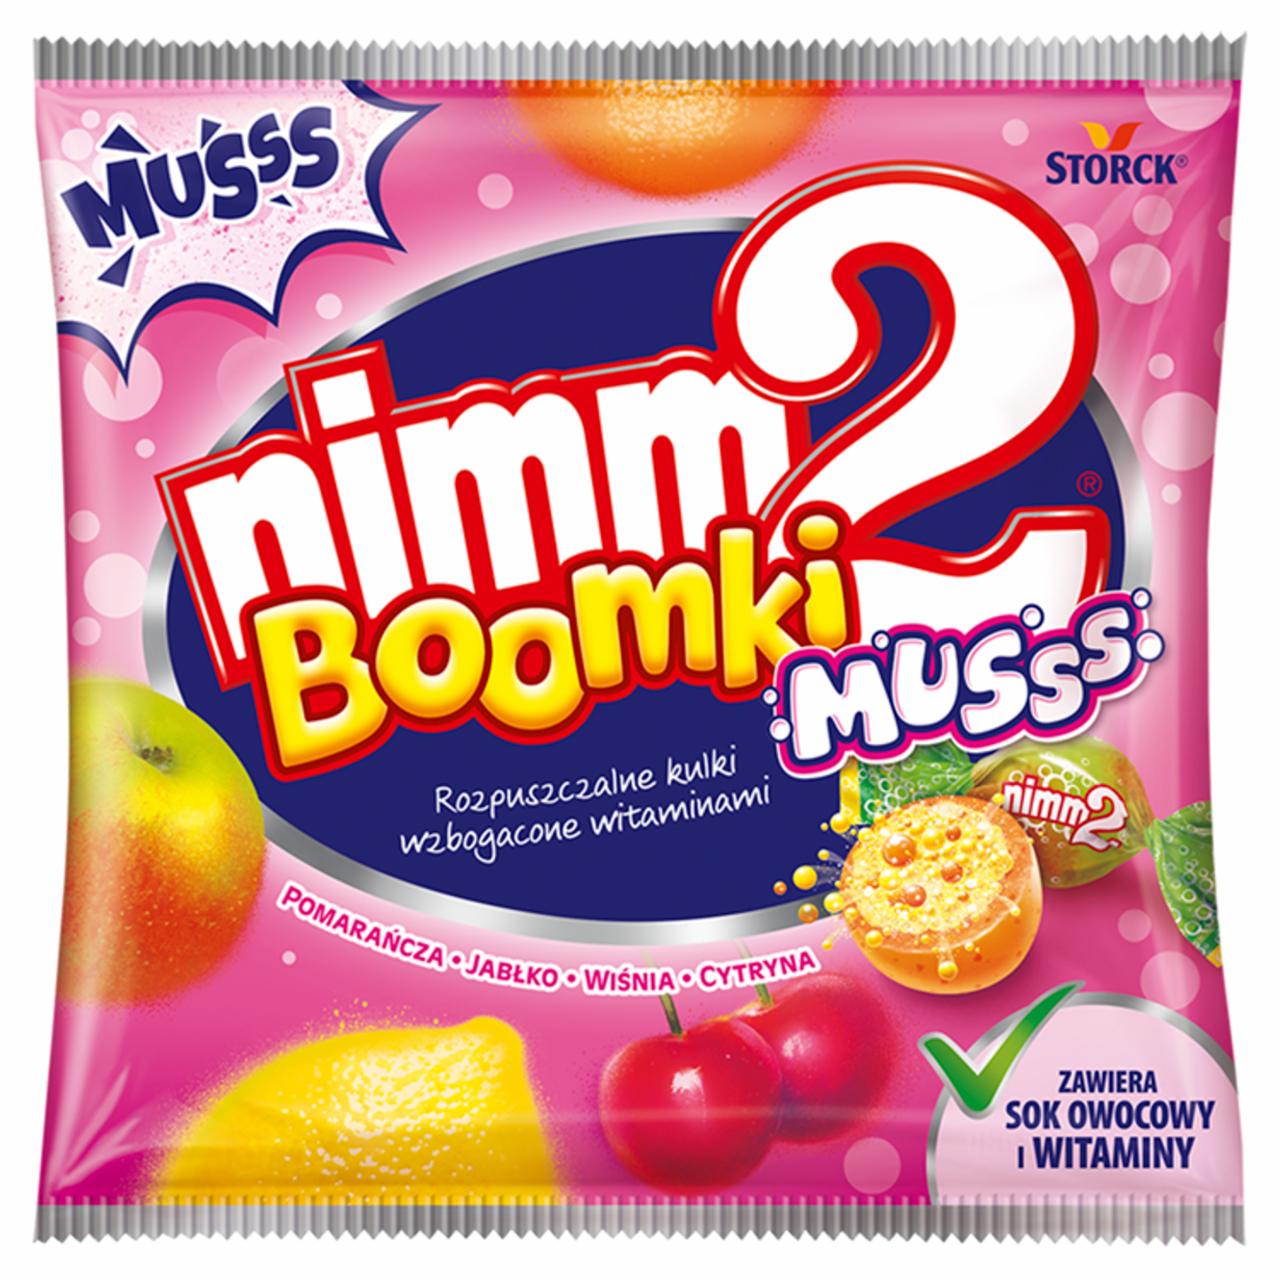 Zdjęcia - nimm2 Boomki Musss Rozpuszczalne cukierki owocowe wzbogacone witaminami 90 g